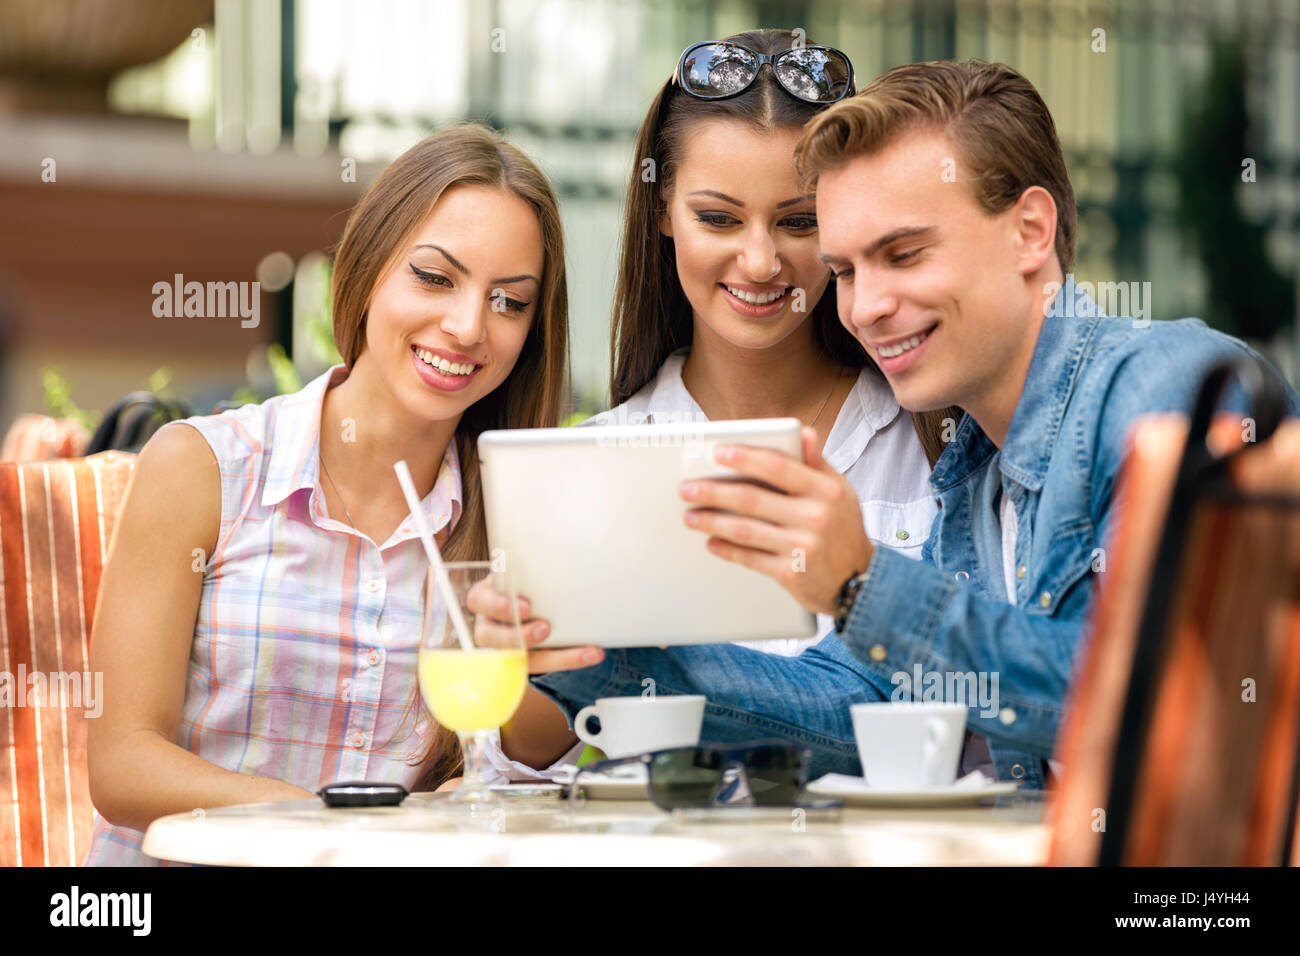 Amis ou collègues bénéficiant de temps libre dans un café, boire du café Banque D'Images